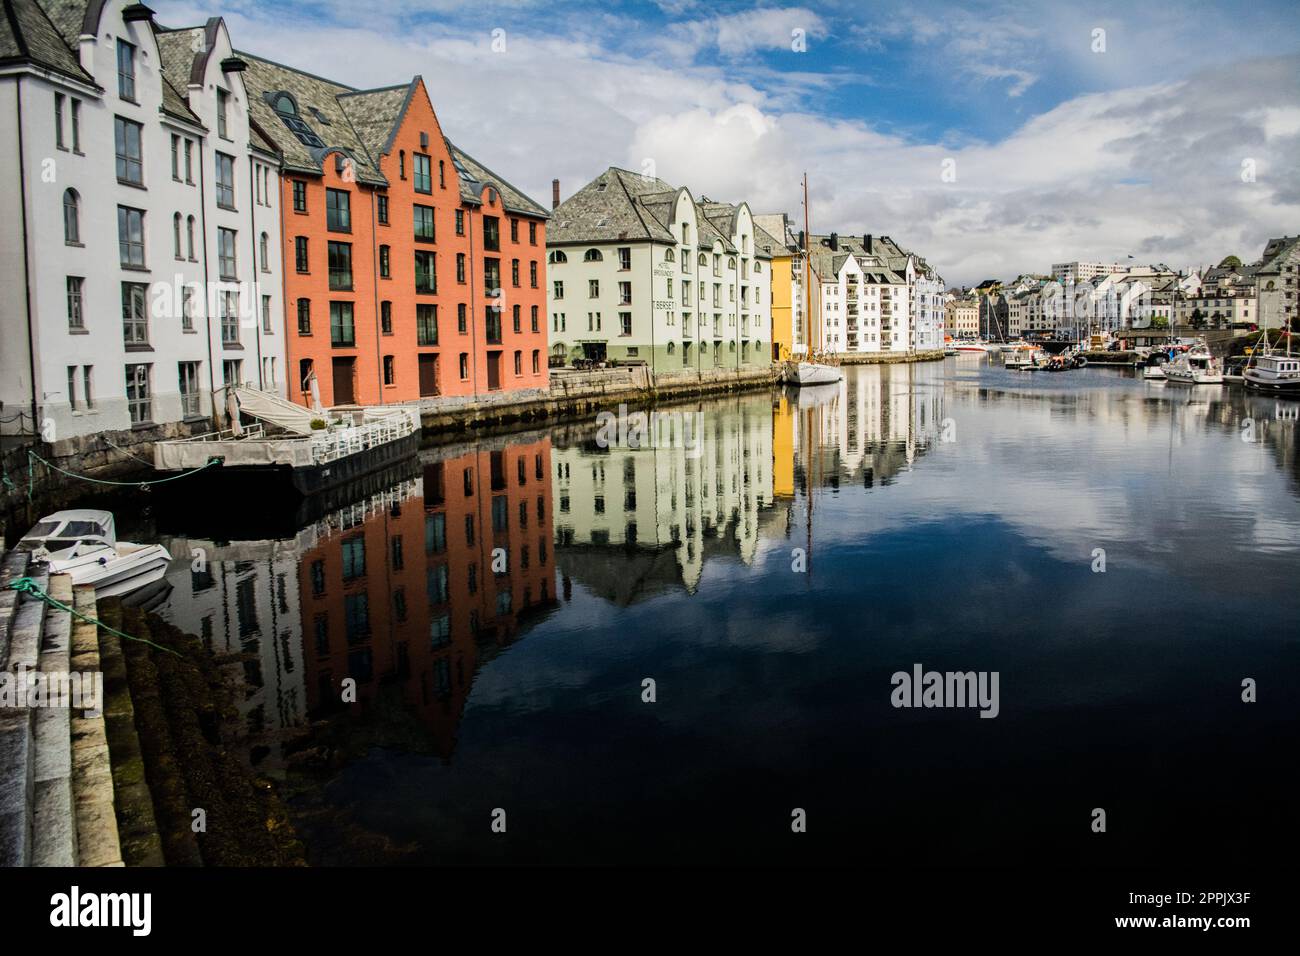 Historische Häuser am Kanal der Stadt Alesund, Norwegen Stockfoto